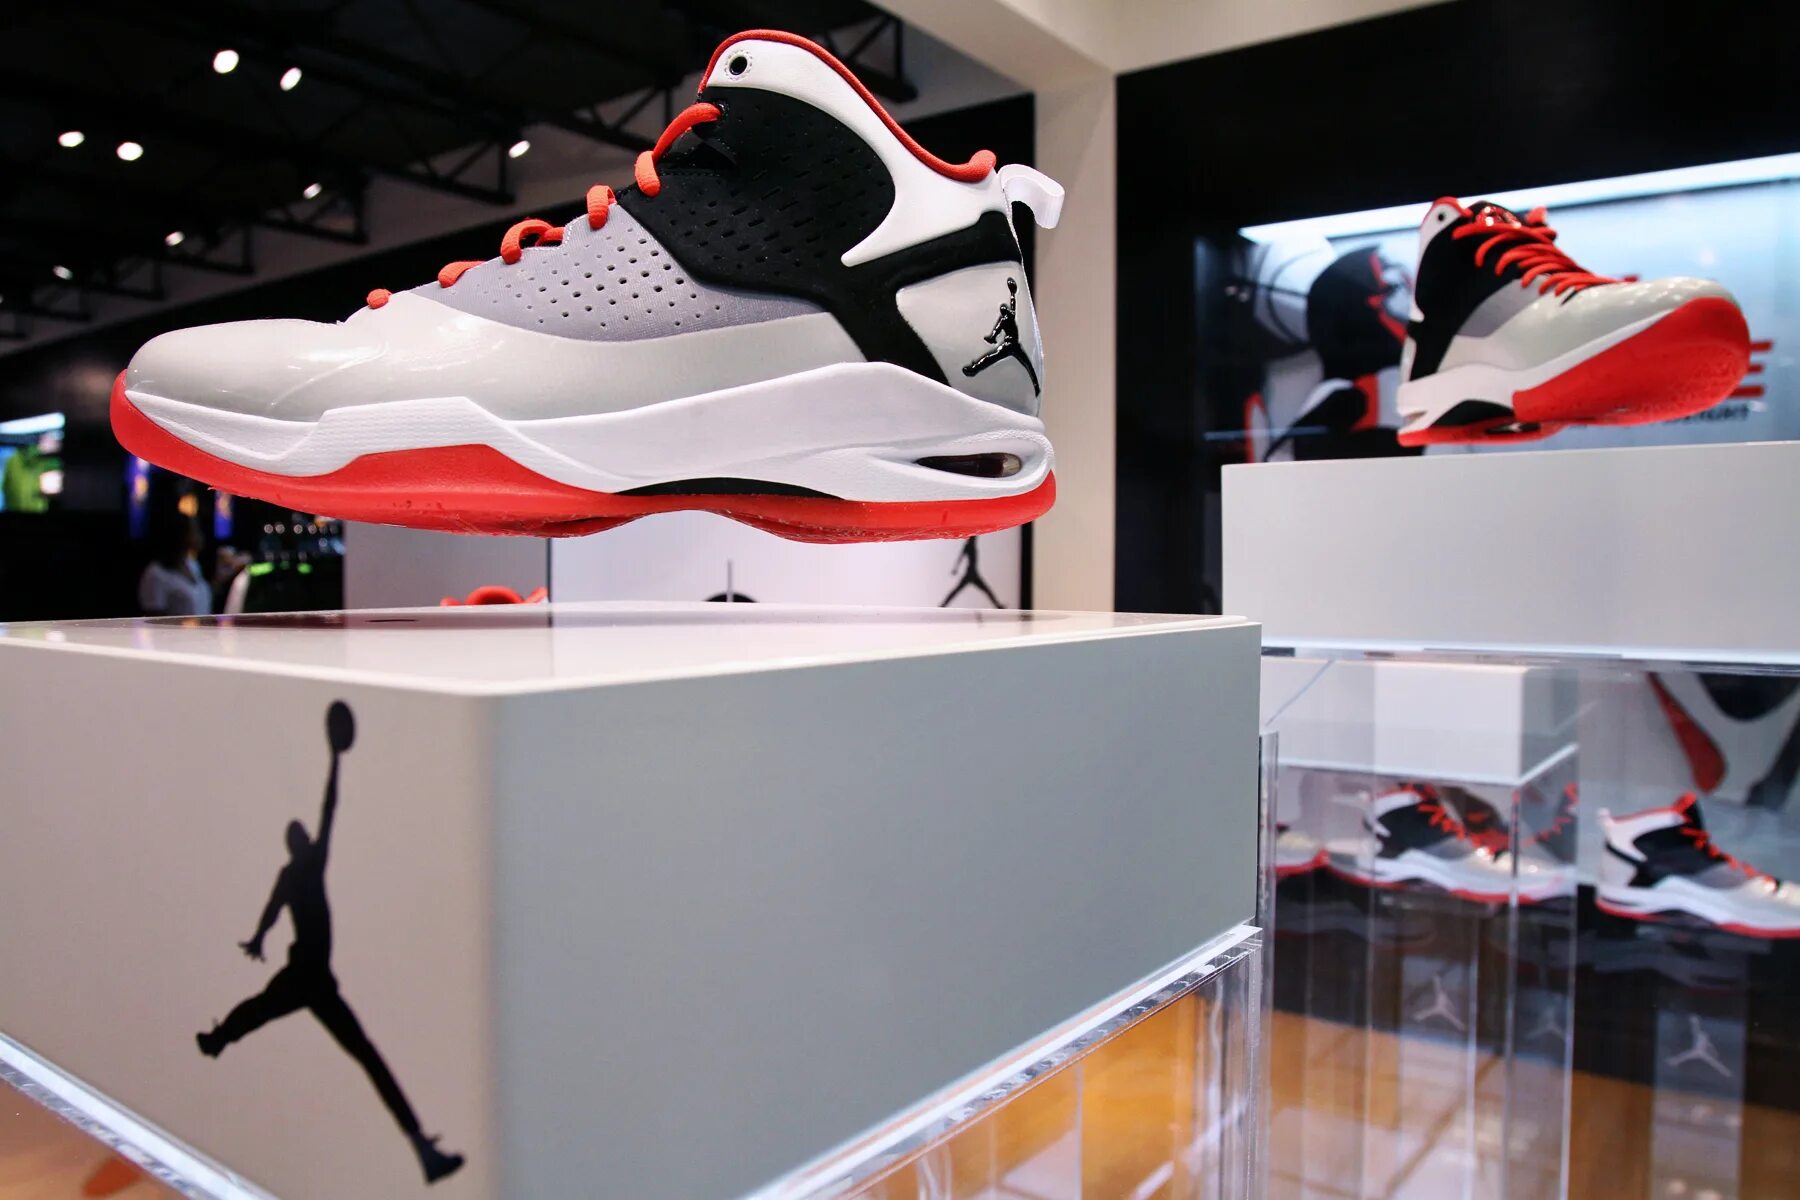 Floating display. Sneaker display. Витрина с левитацией для обуви. Shoe display Stand. Display: Float.